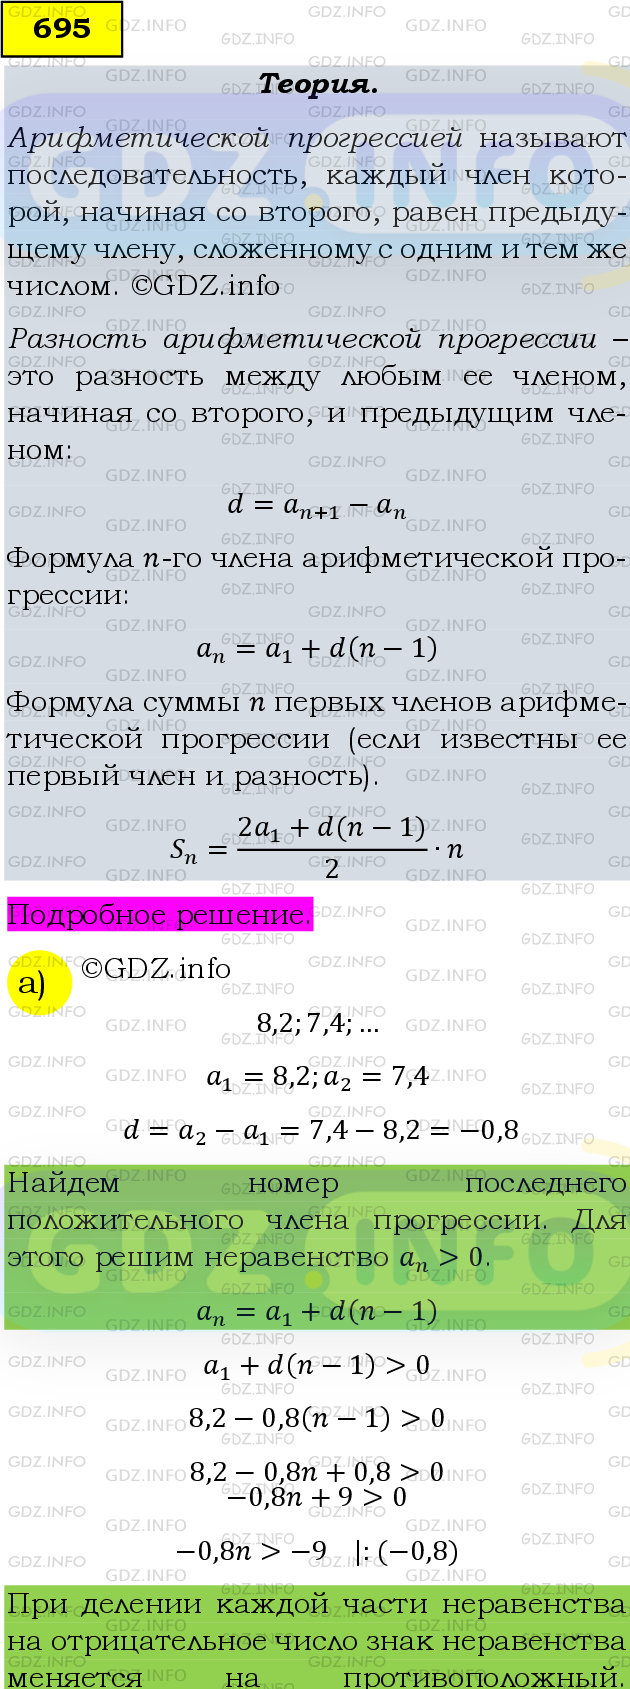 Фото подробного решения: Номер задания №695 из ГДЗ по Алгебре 9 класс: Макарычев Ю.Н.